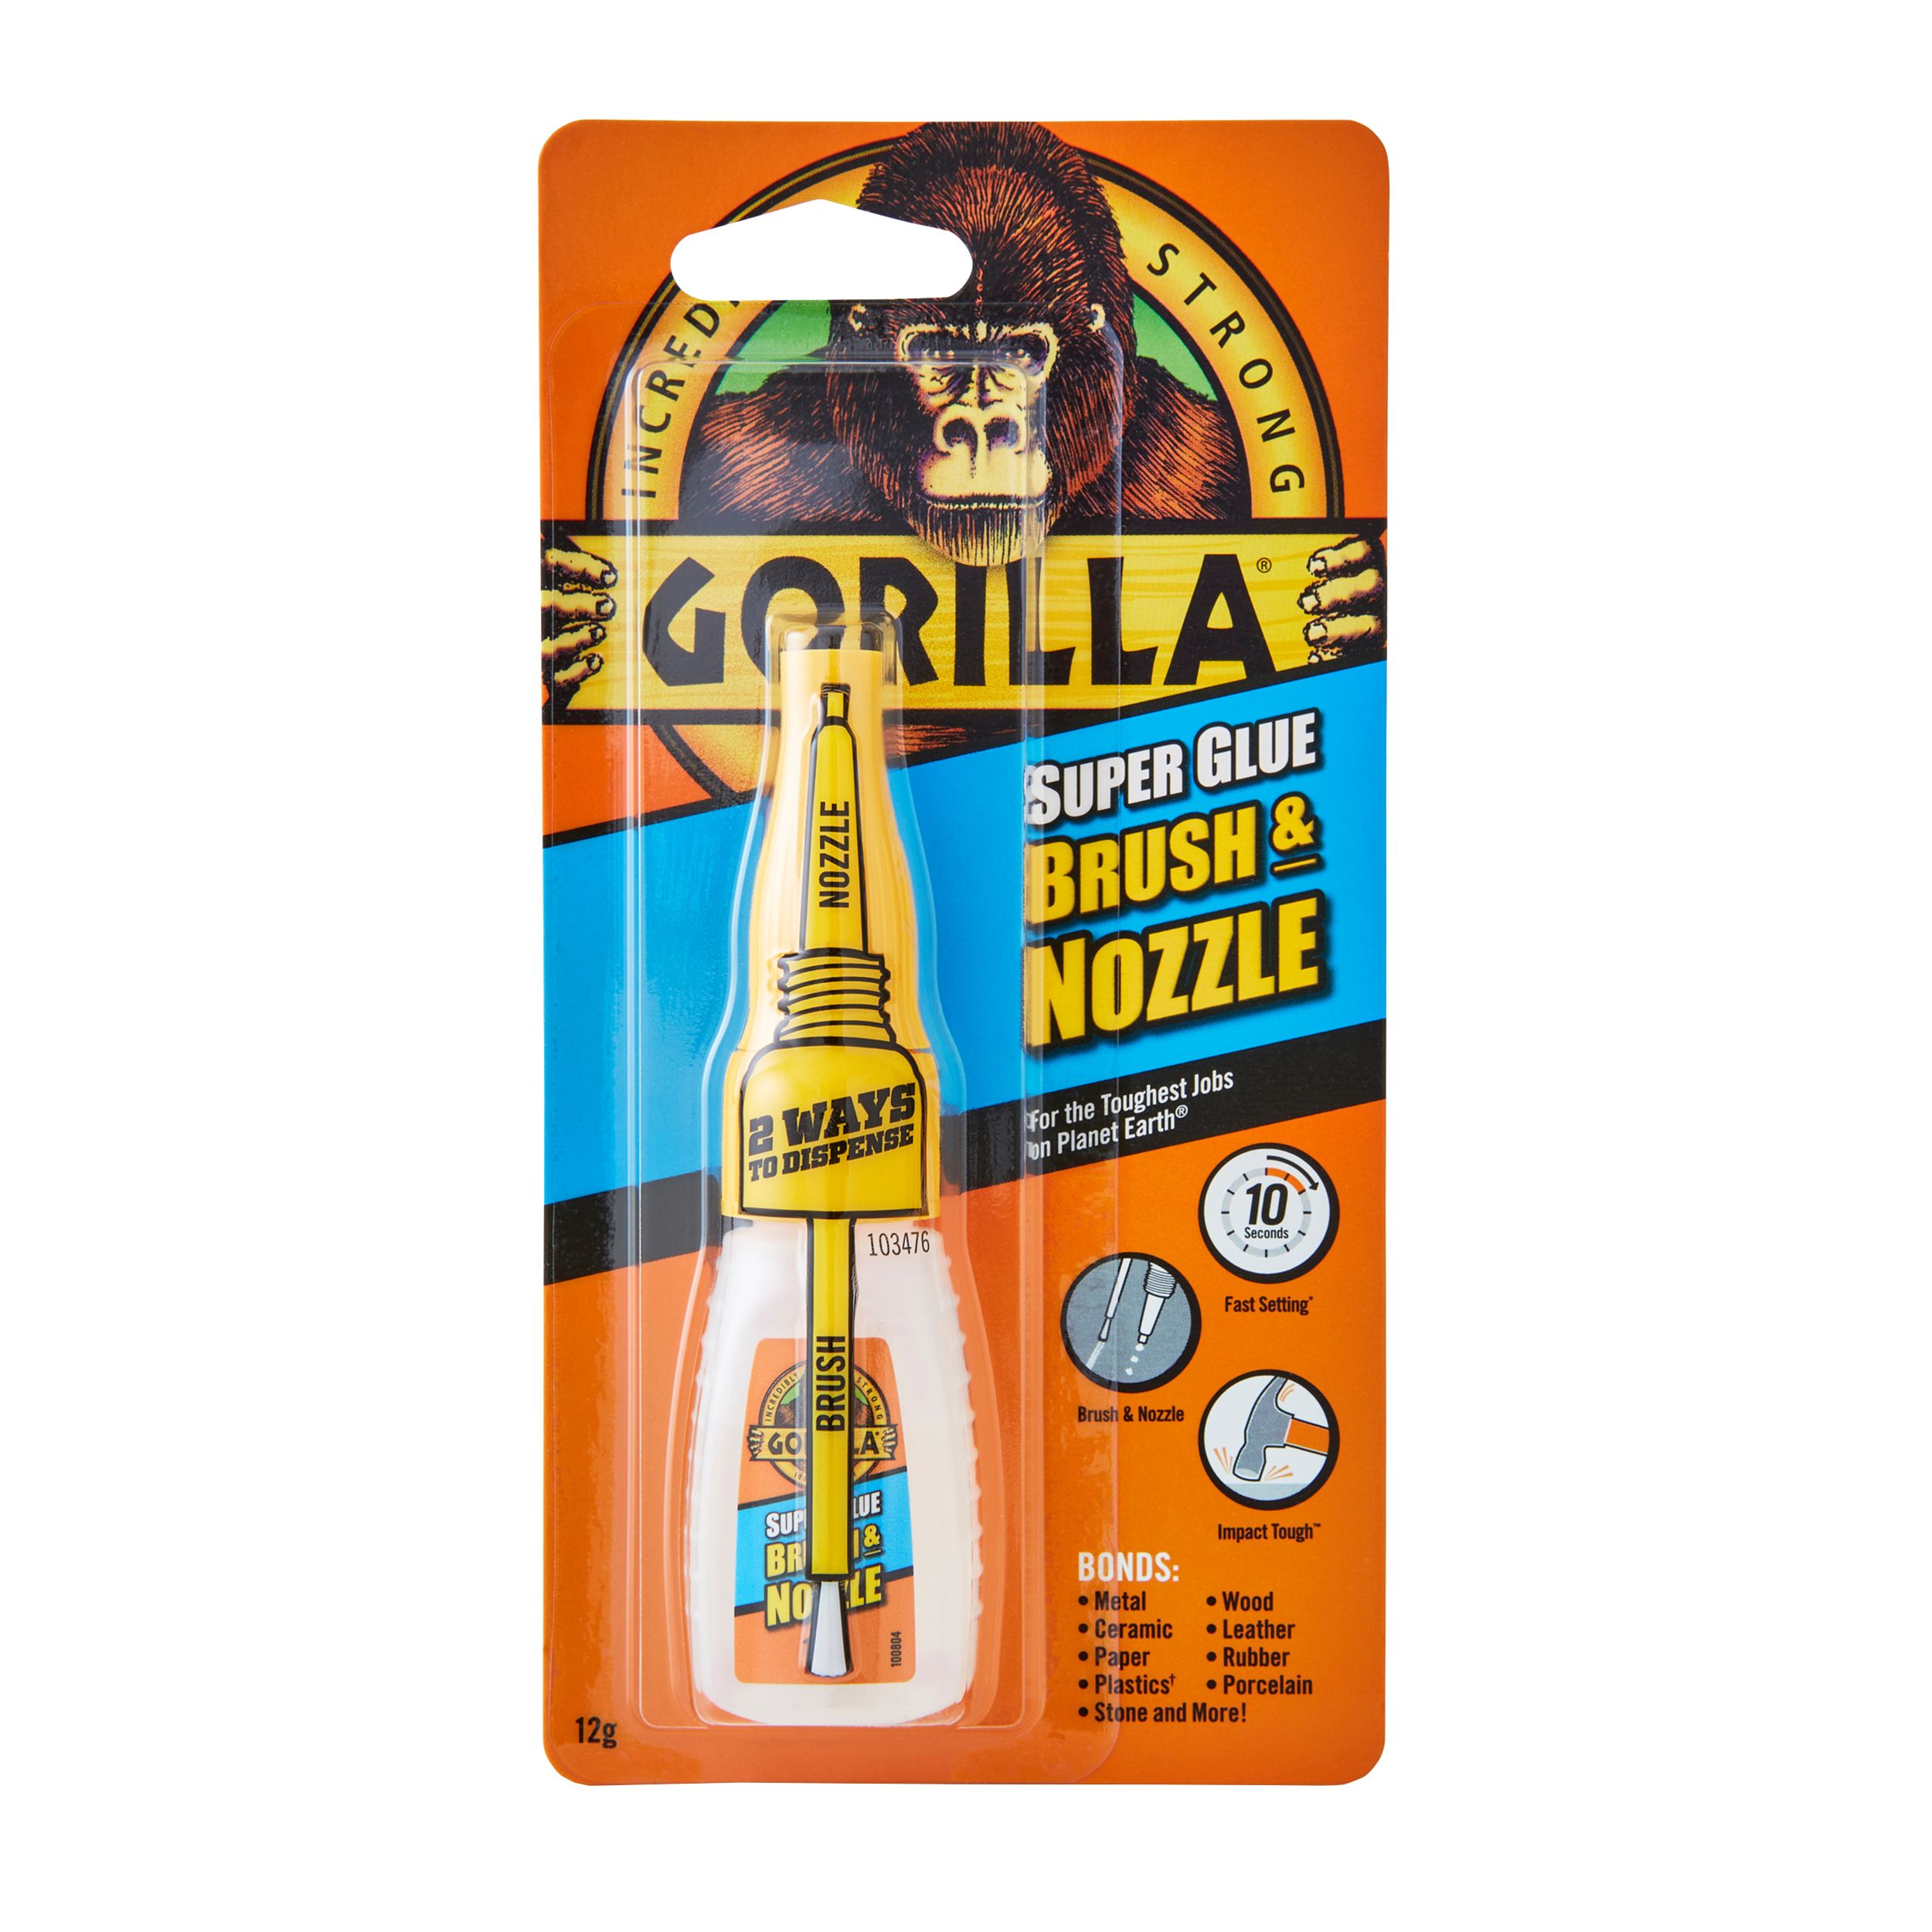 Gorilla Brush & Nozzle Superglue 12g